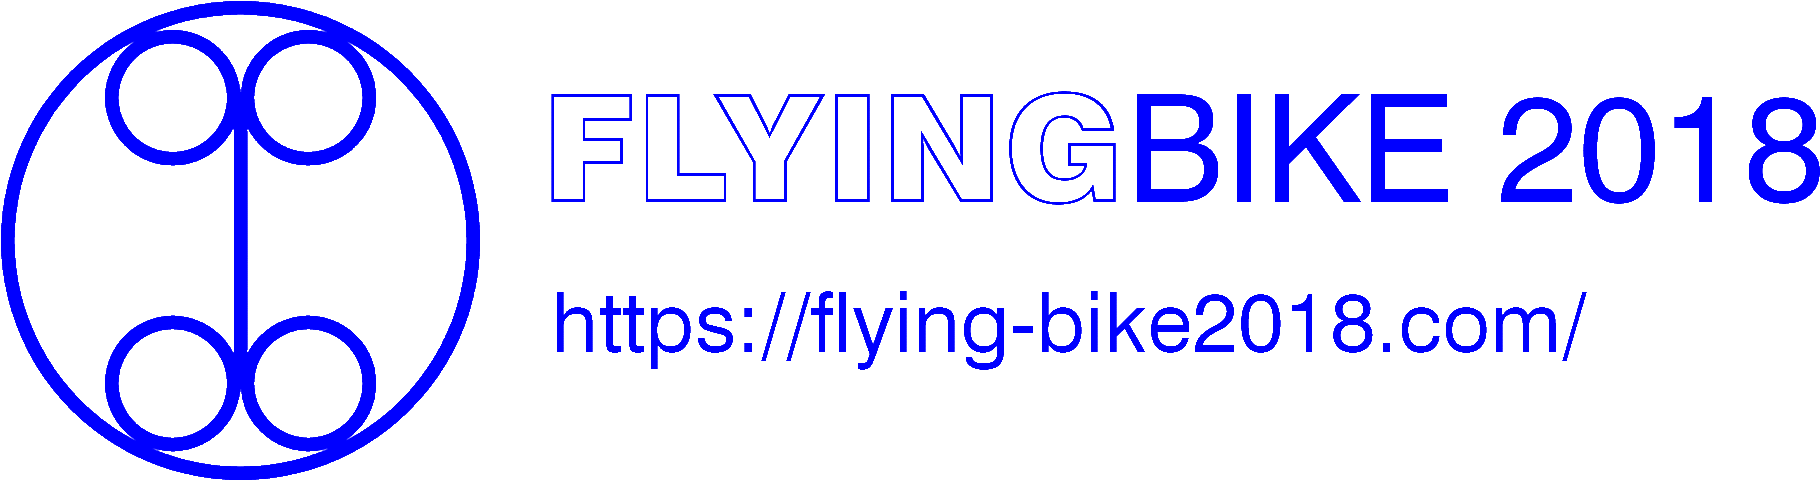 FlyingBike2018